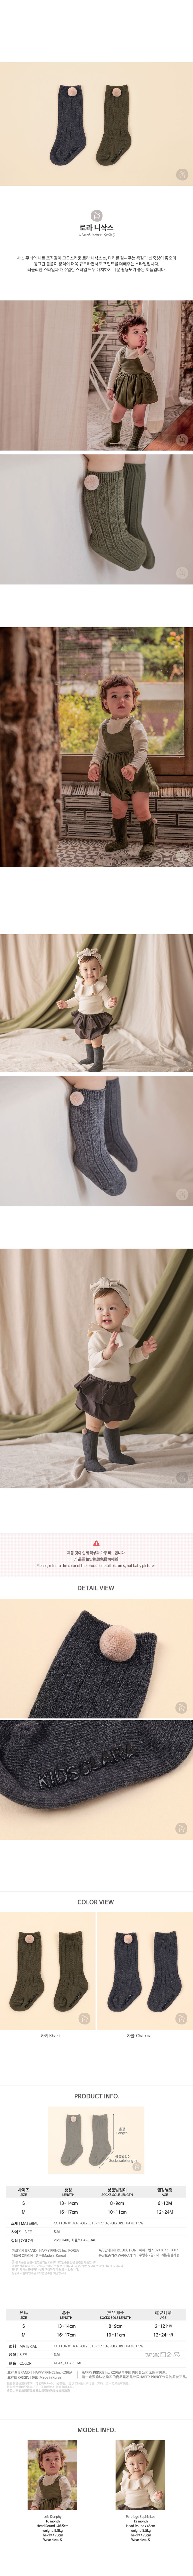 韓國 Happy Prince Laura毛球嬰兒及膝襪 寶寶襪兒童襪 炭黑色S